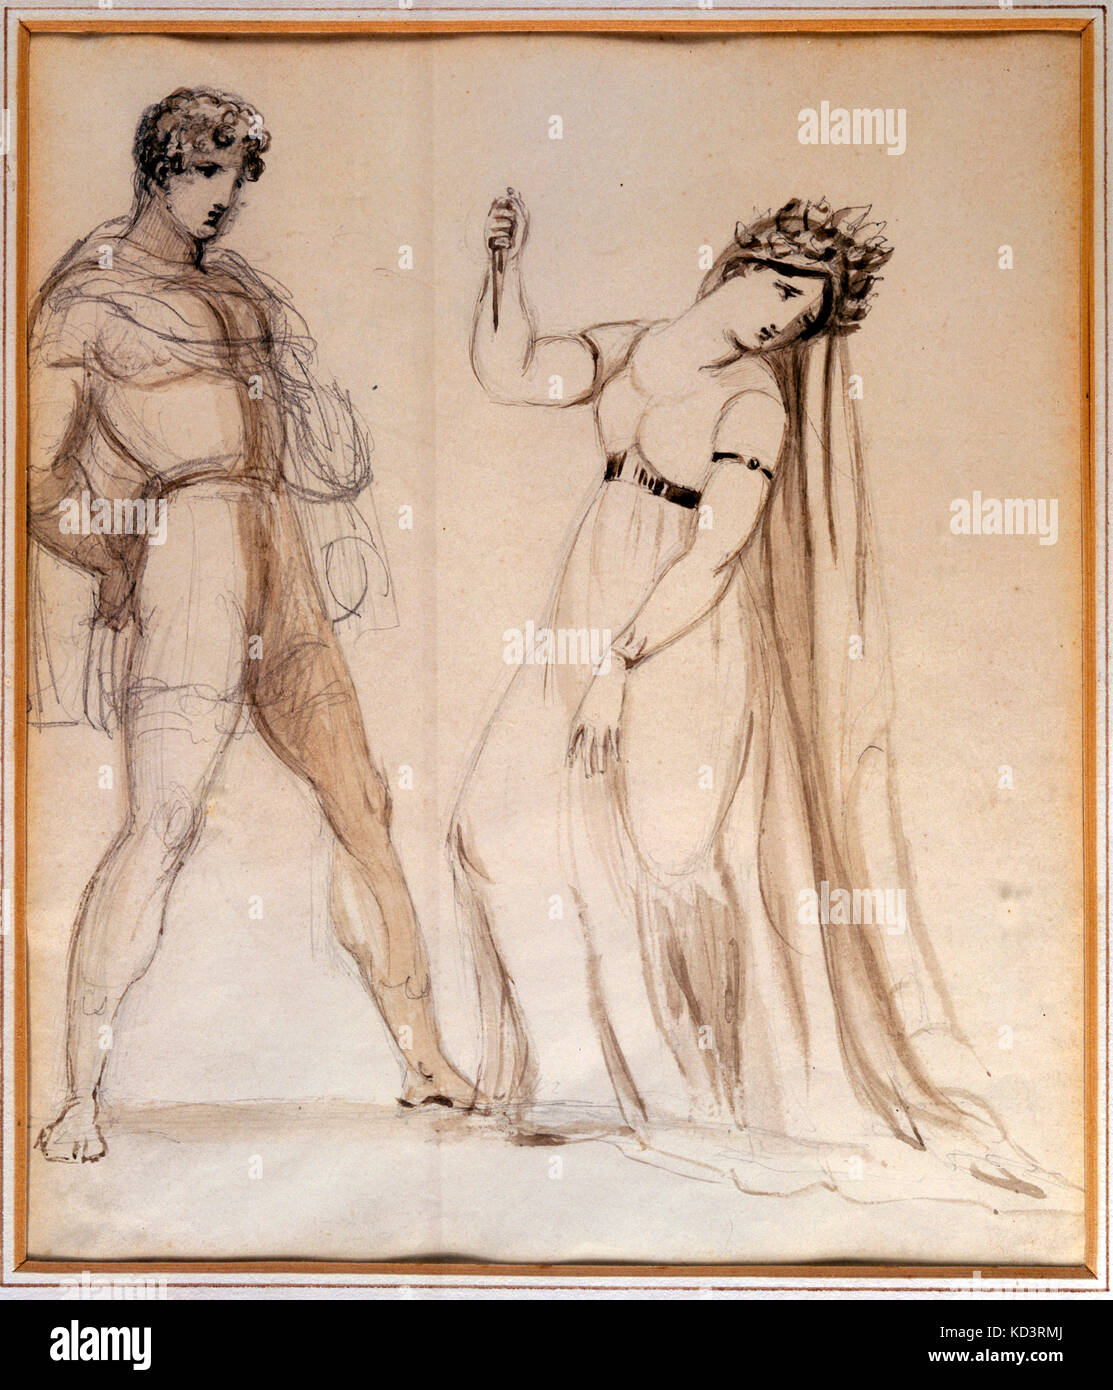 Simone Mayr 's Medea in Corinto - contemporary illustration of Giuditta Pasta (Italian soprano, 1797-1865) as Medea in première (Naples, 1813). German - Italian composer, 1763-1845. Stock Photo